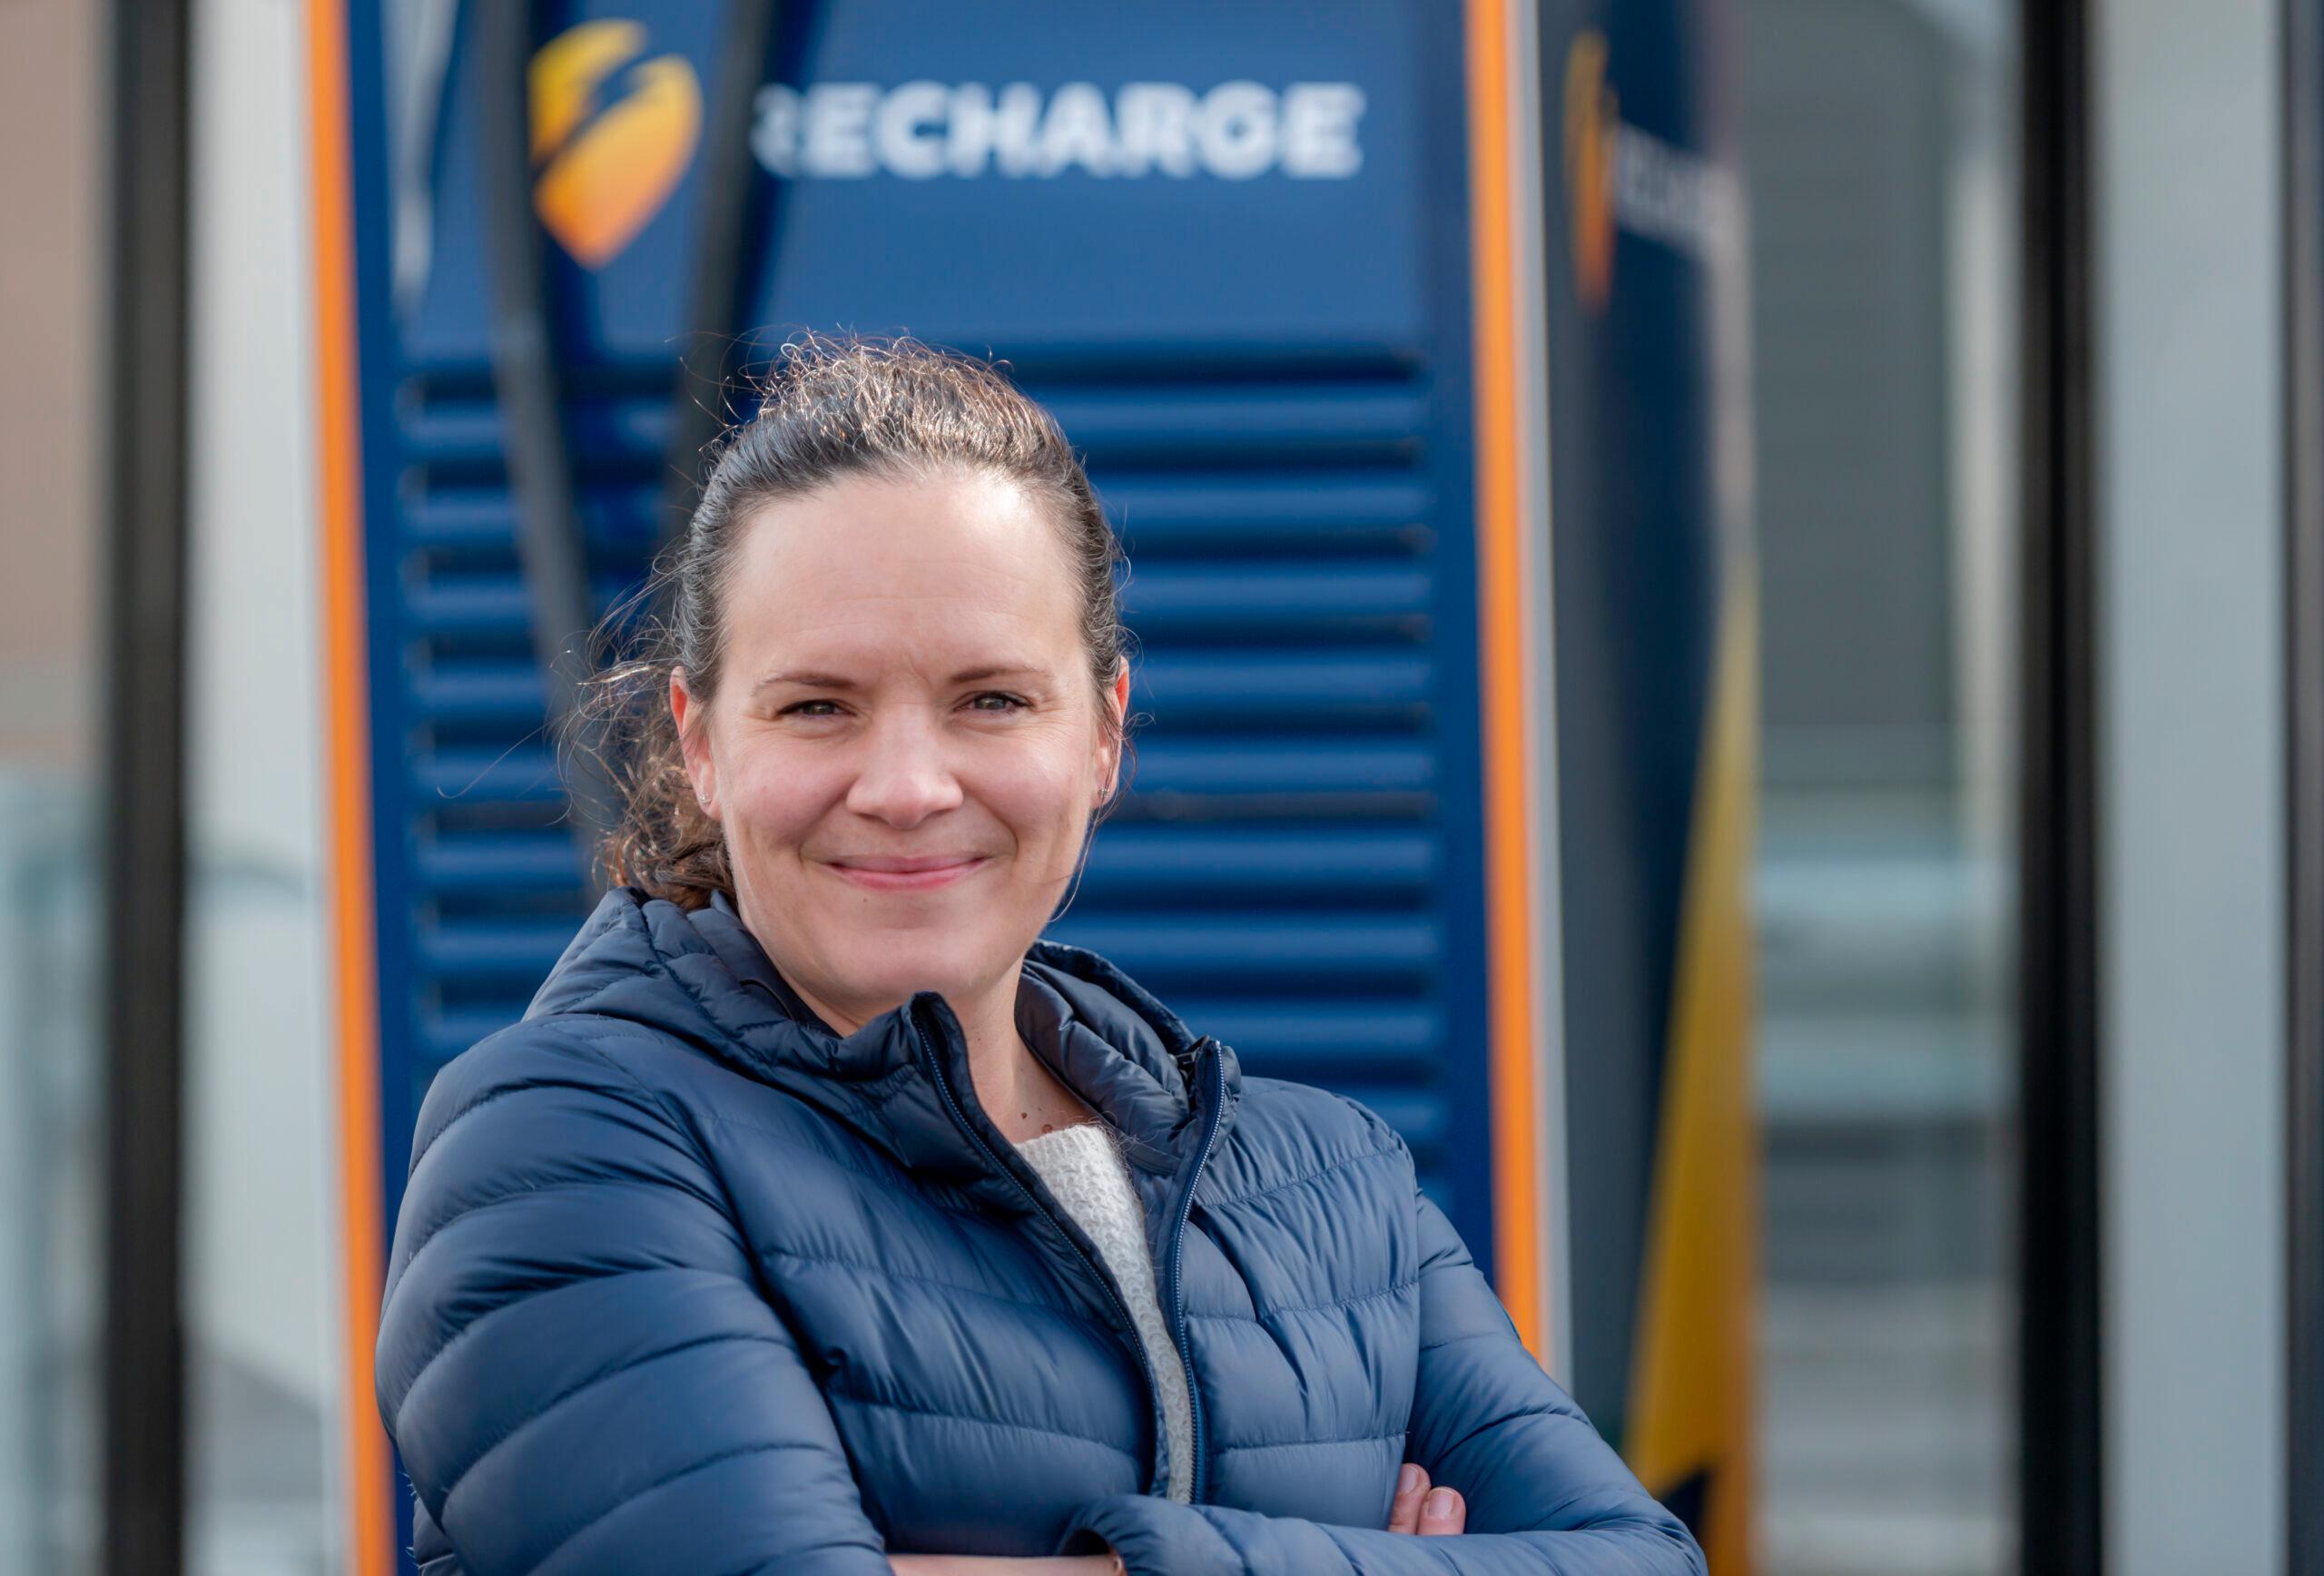 Elise Thorvaldsen er sjef for kundeopplevelser og kommunikasjon hos Recharge. Hun er tydelig på at bransjen ikke har vært god nok, men sier også at de ønsker å bli bedre. Å involvere brukerne inngår i planene for fremtidig utbygging.